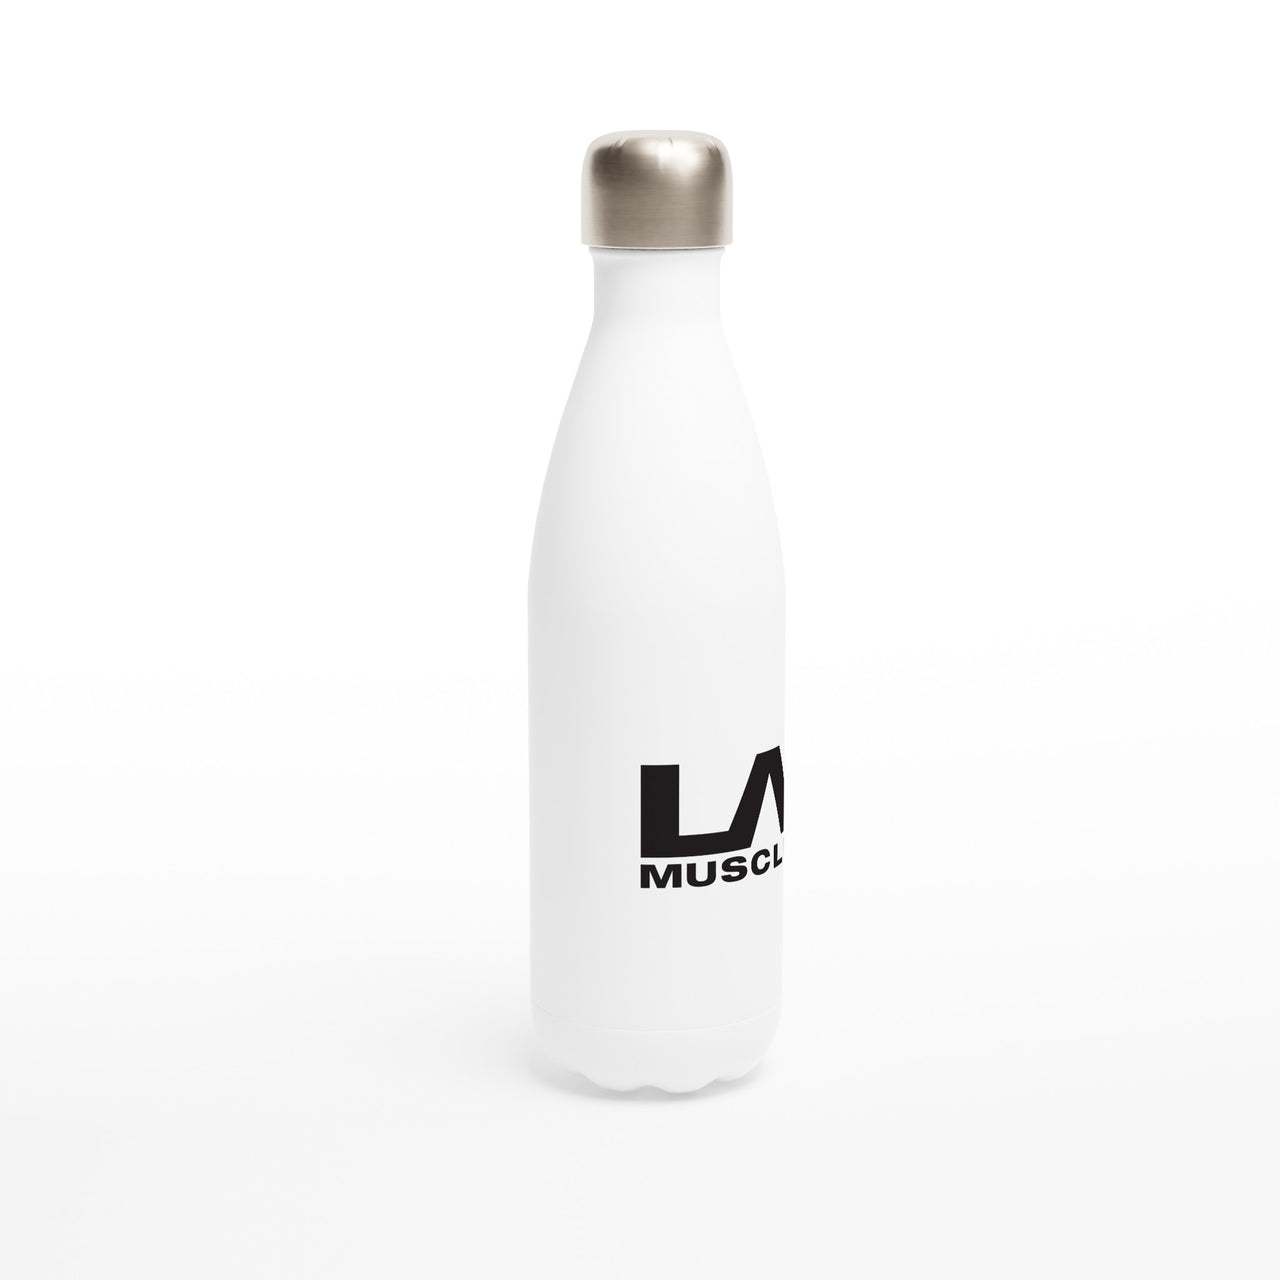 LA MUSCLE White 17oz Stainless Steel Water Bottle